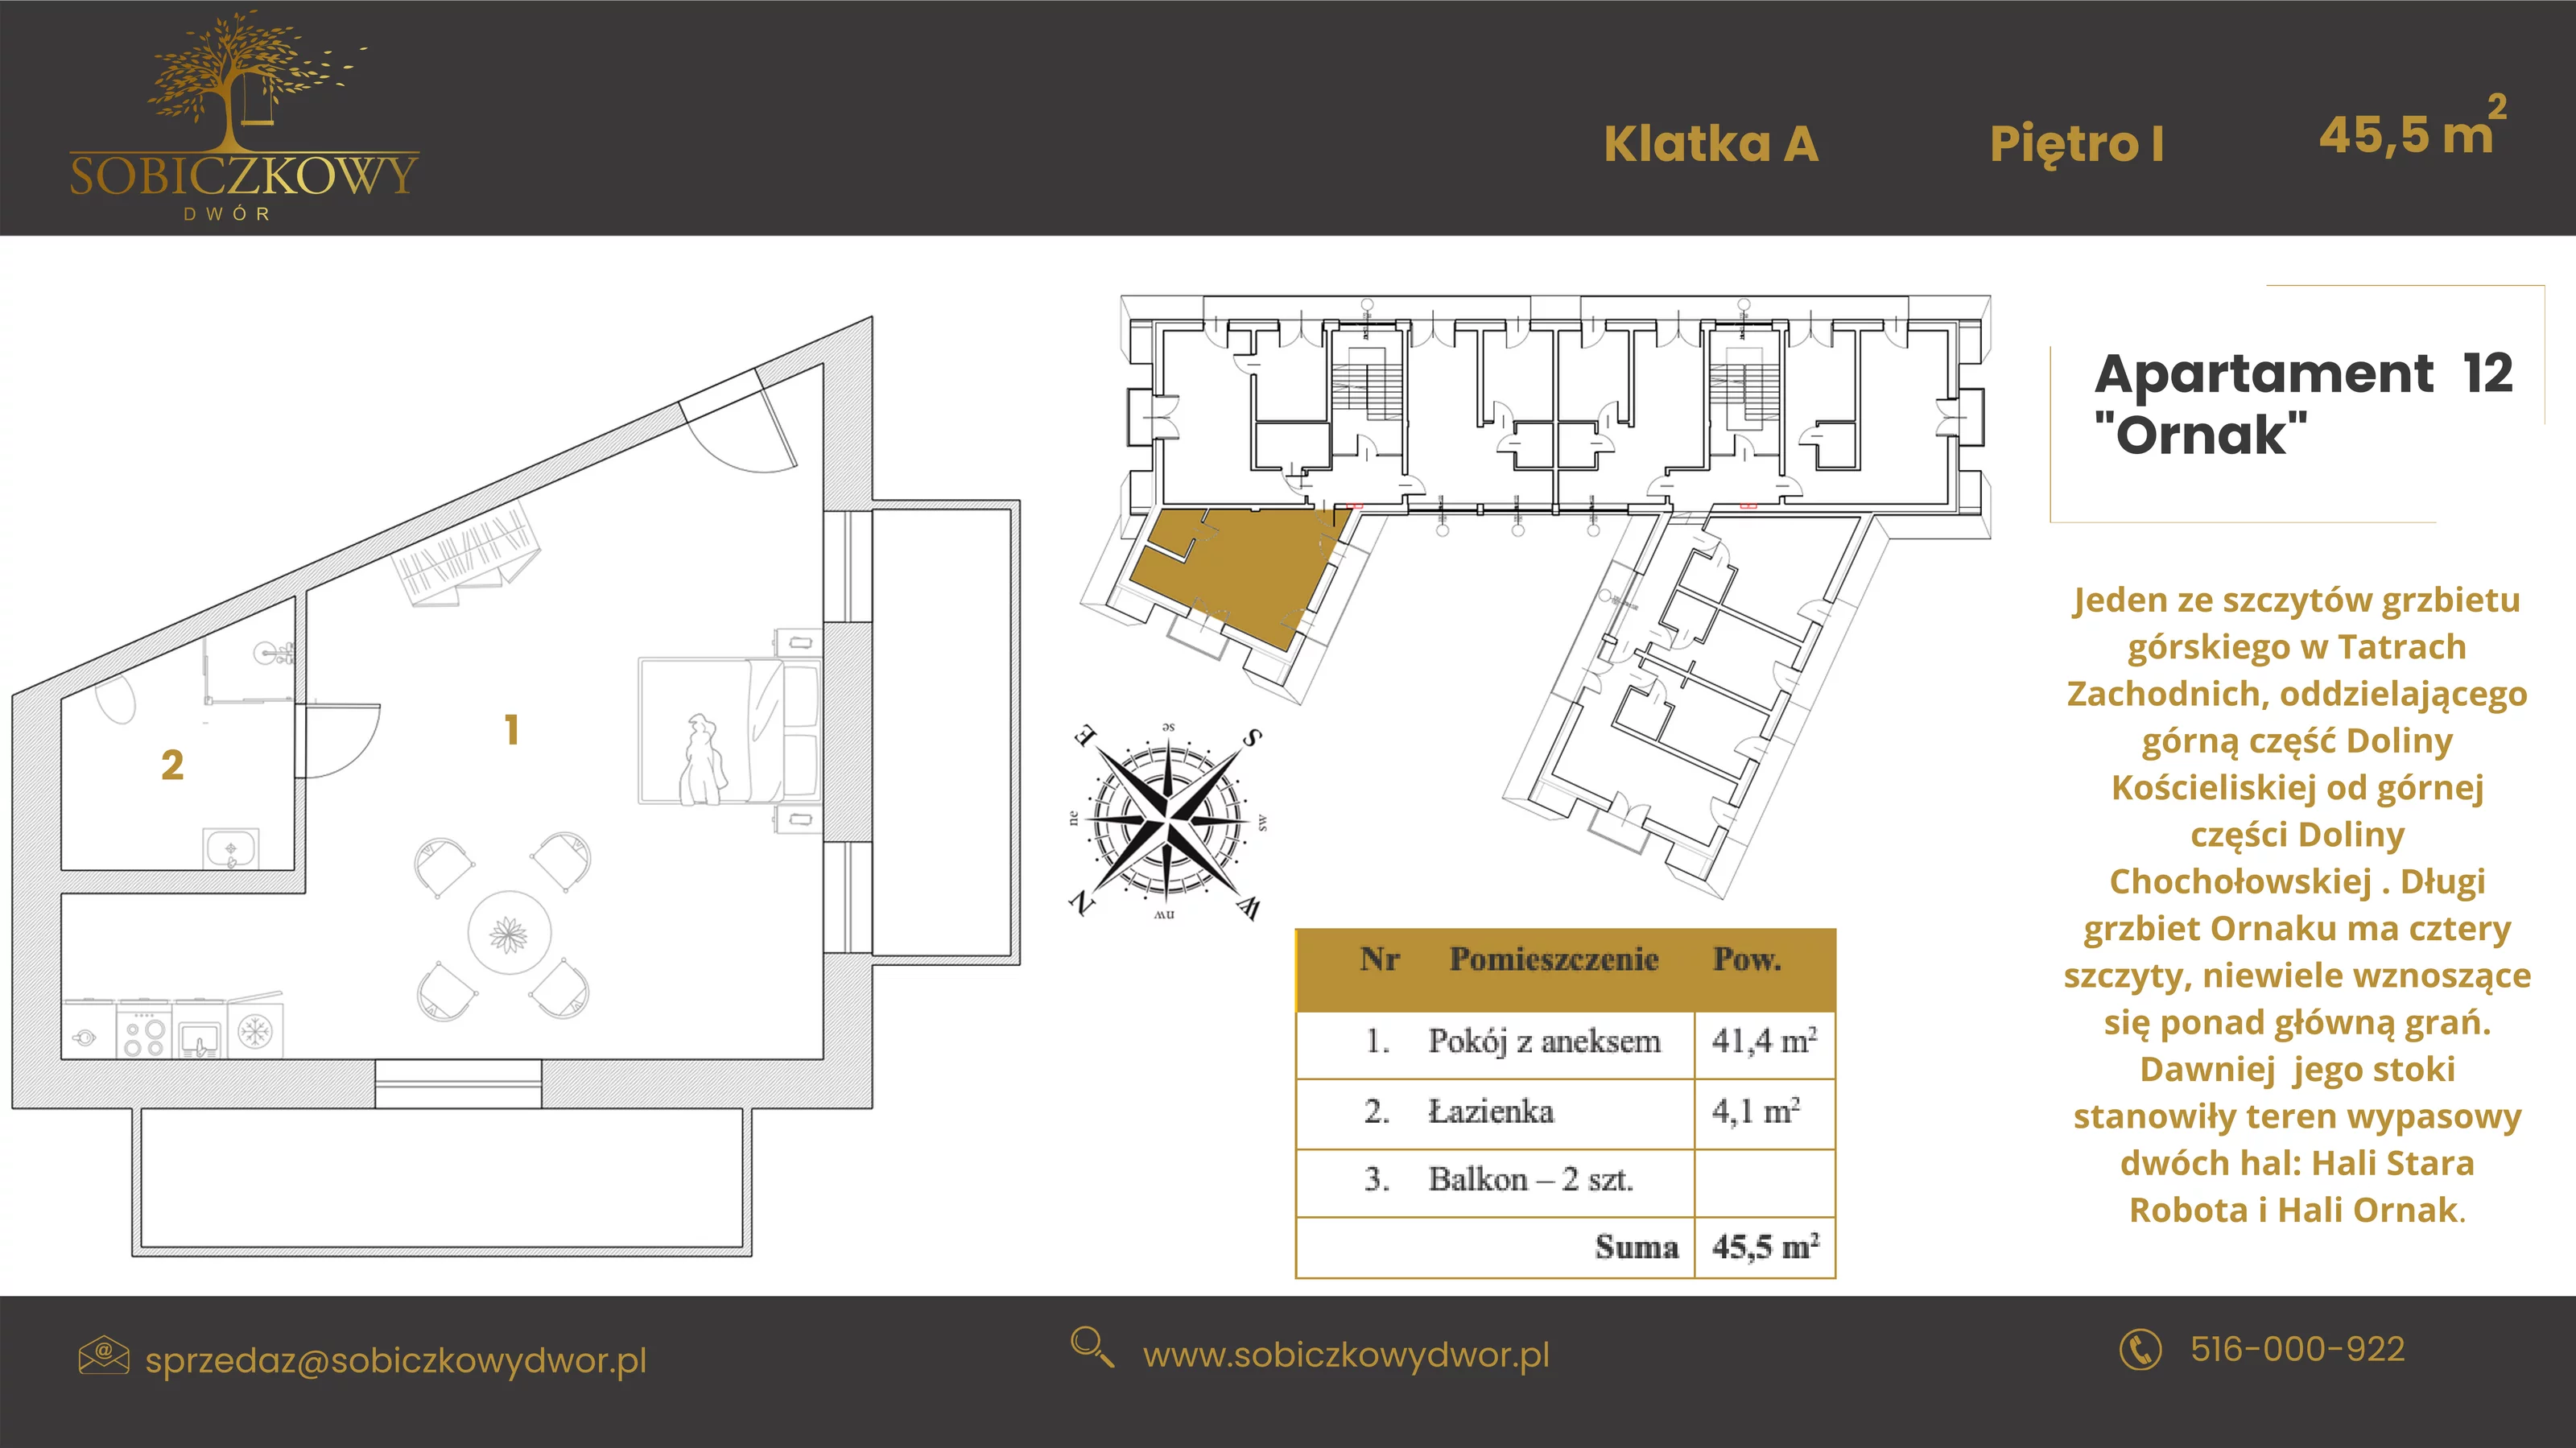 Apartament 45,50 m², piętro 1, oferta nr 12 "Ornak", Sobiczkowy Dwór, Kościelisko, ul. Sobiczkowa Bór 1